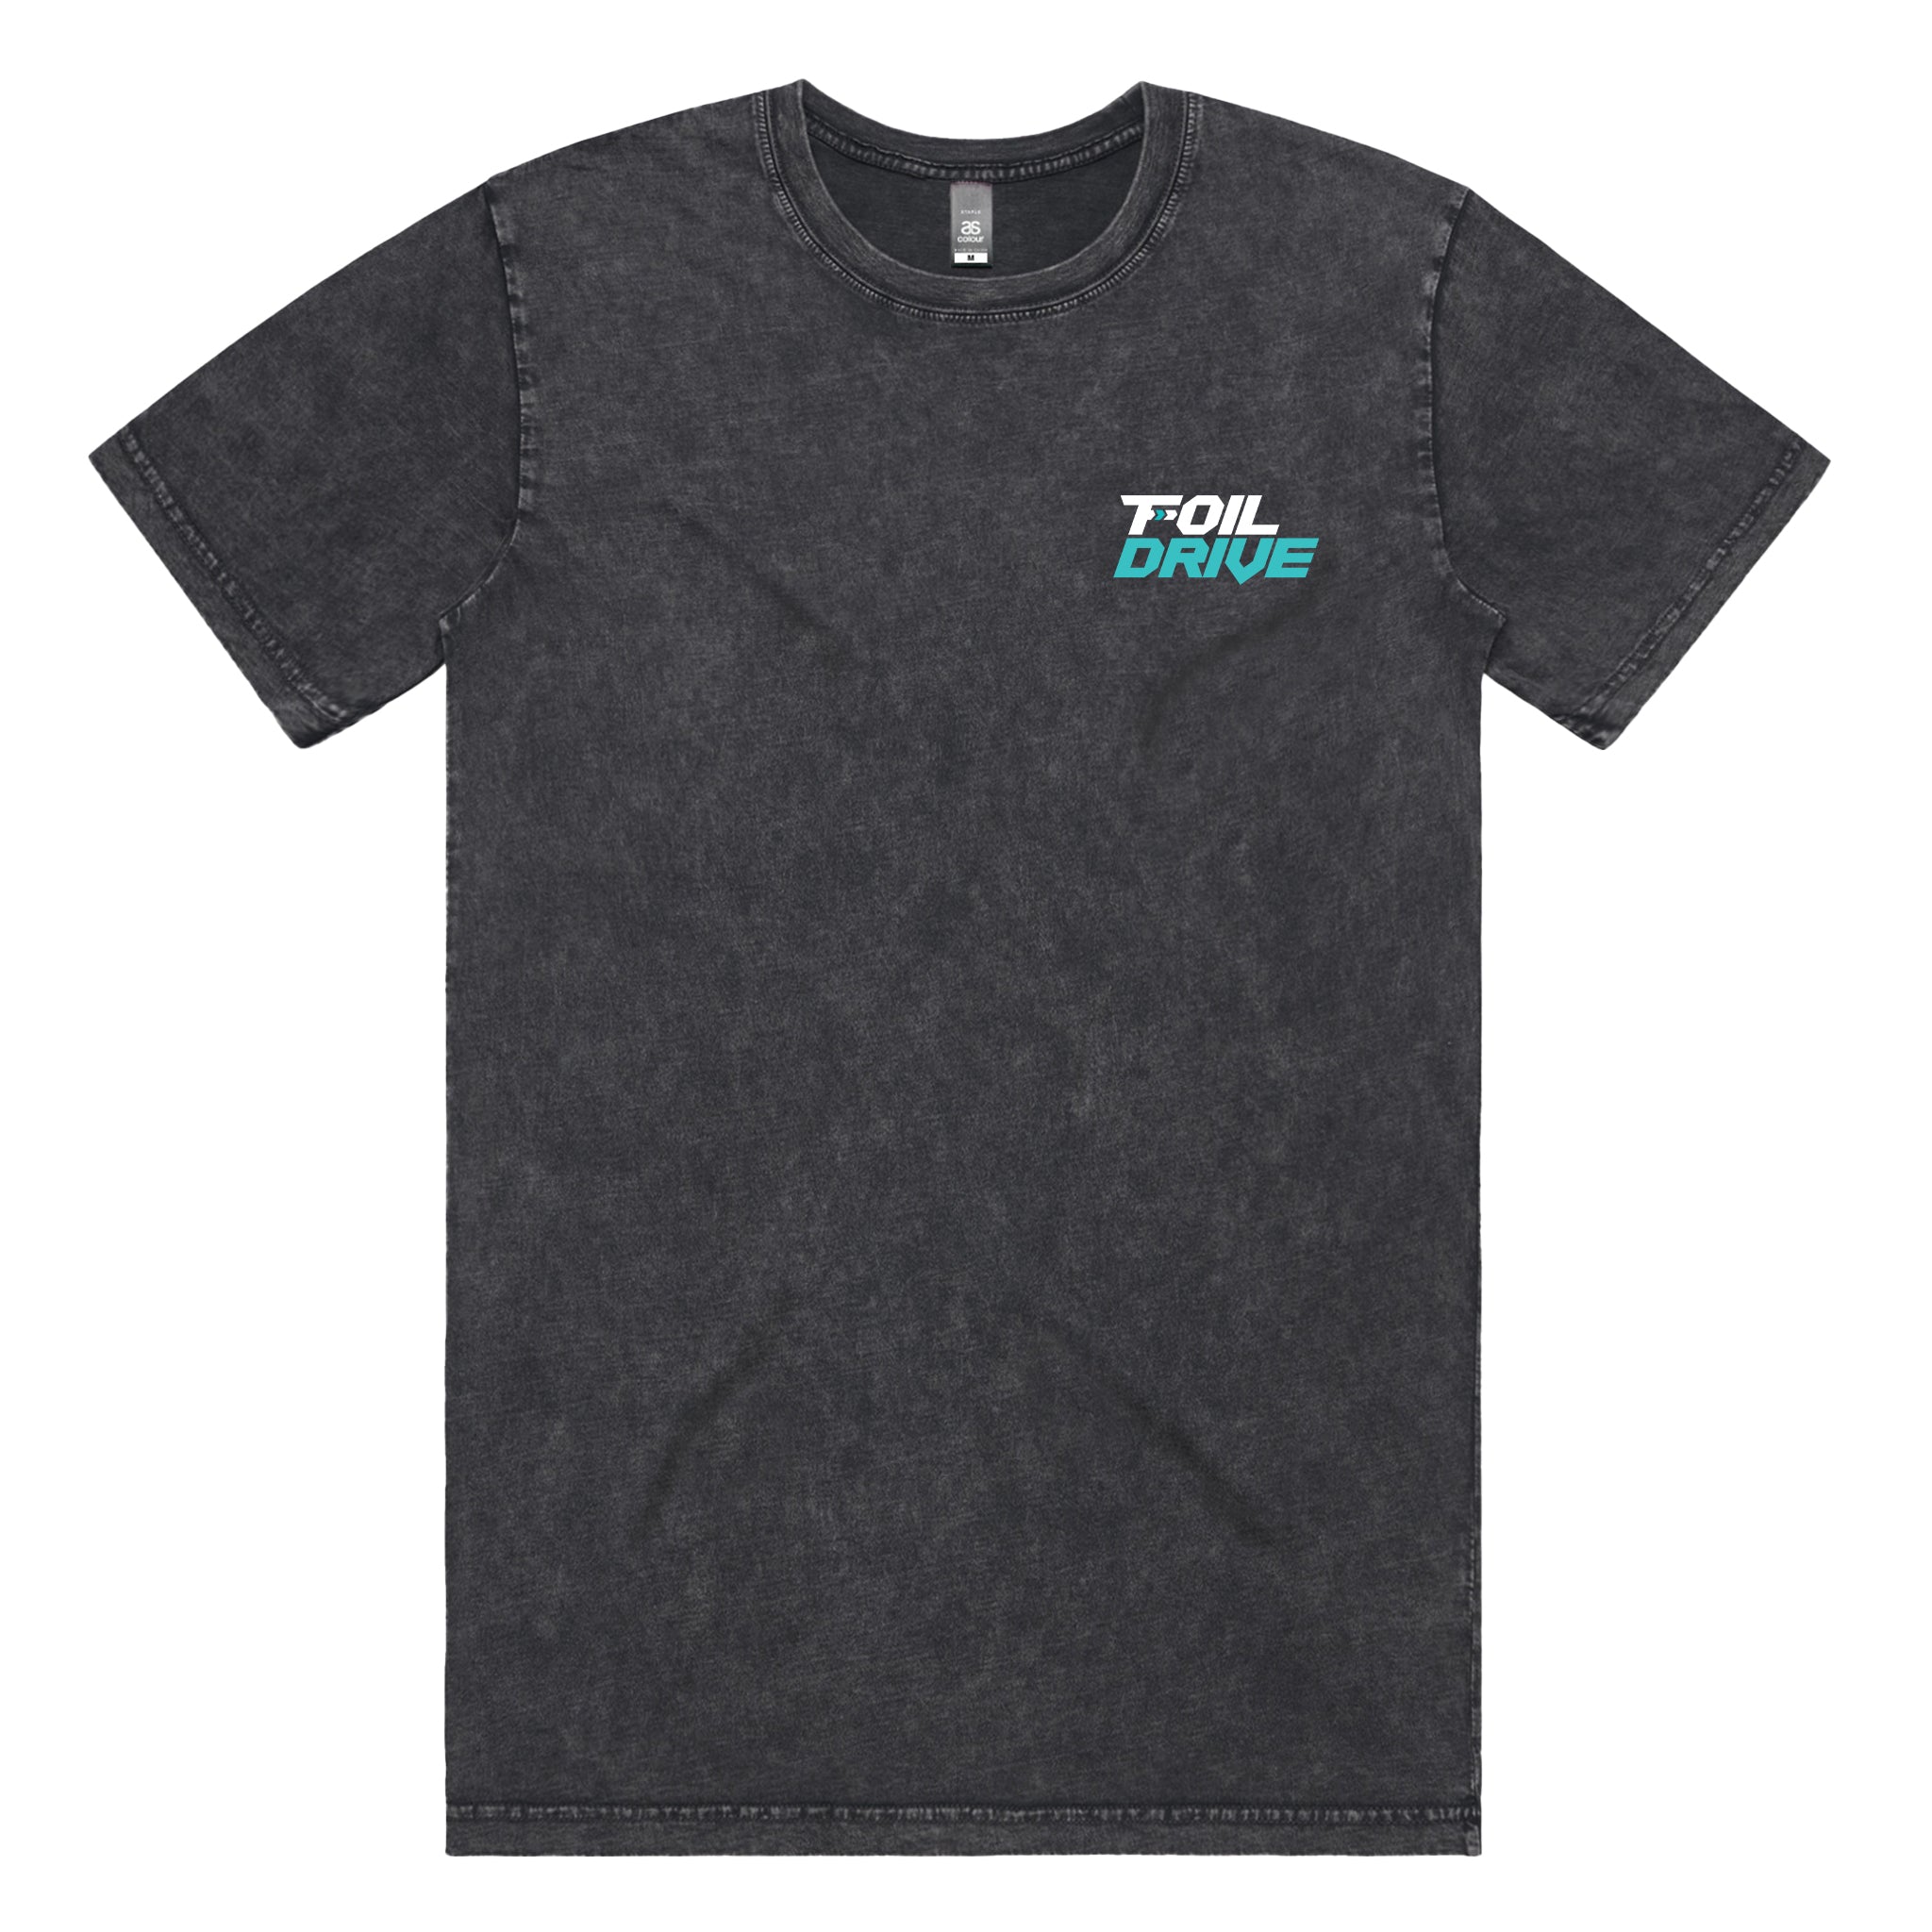 Foil Drive Stone Wash Shirt Black - Extra Large